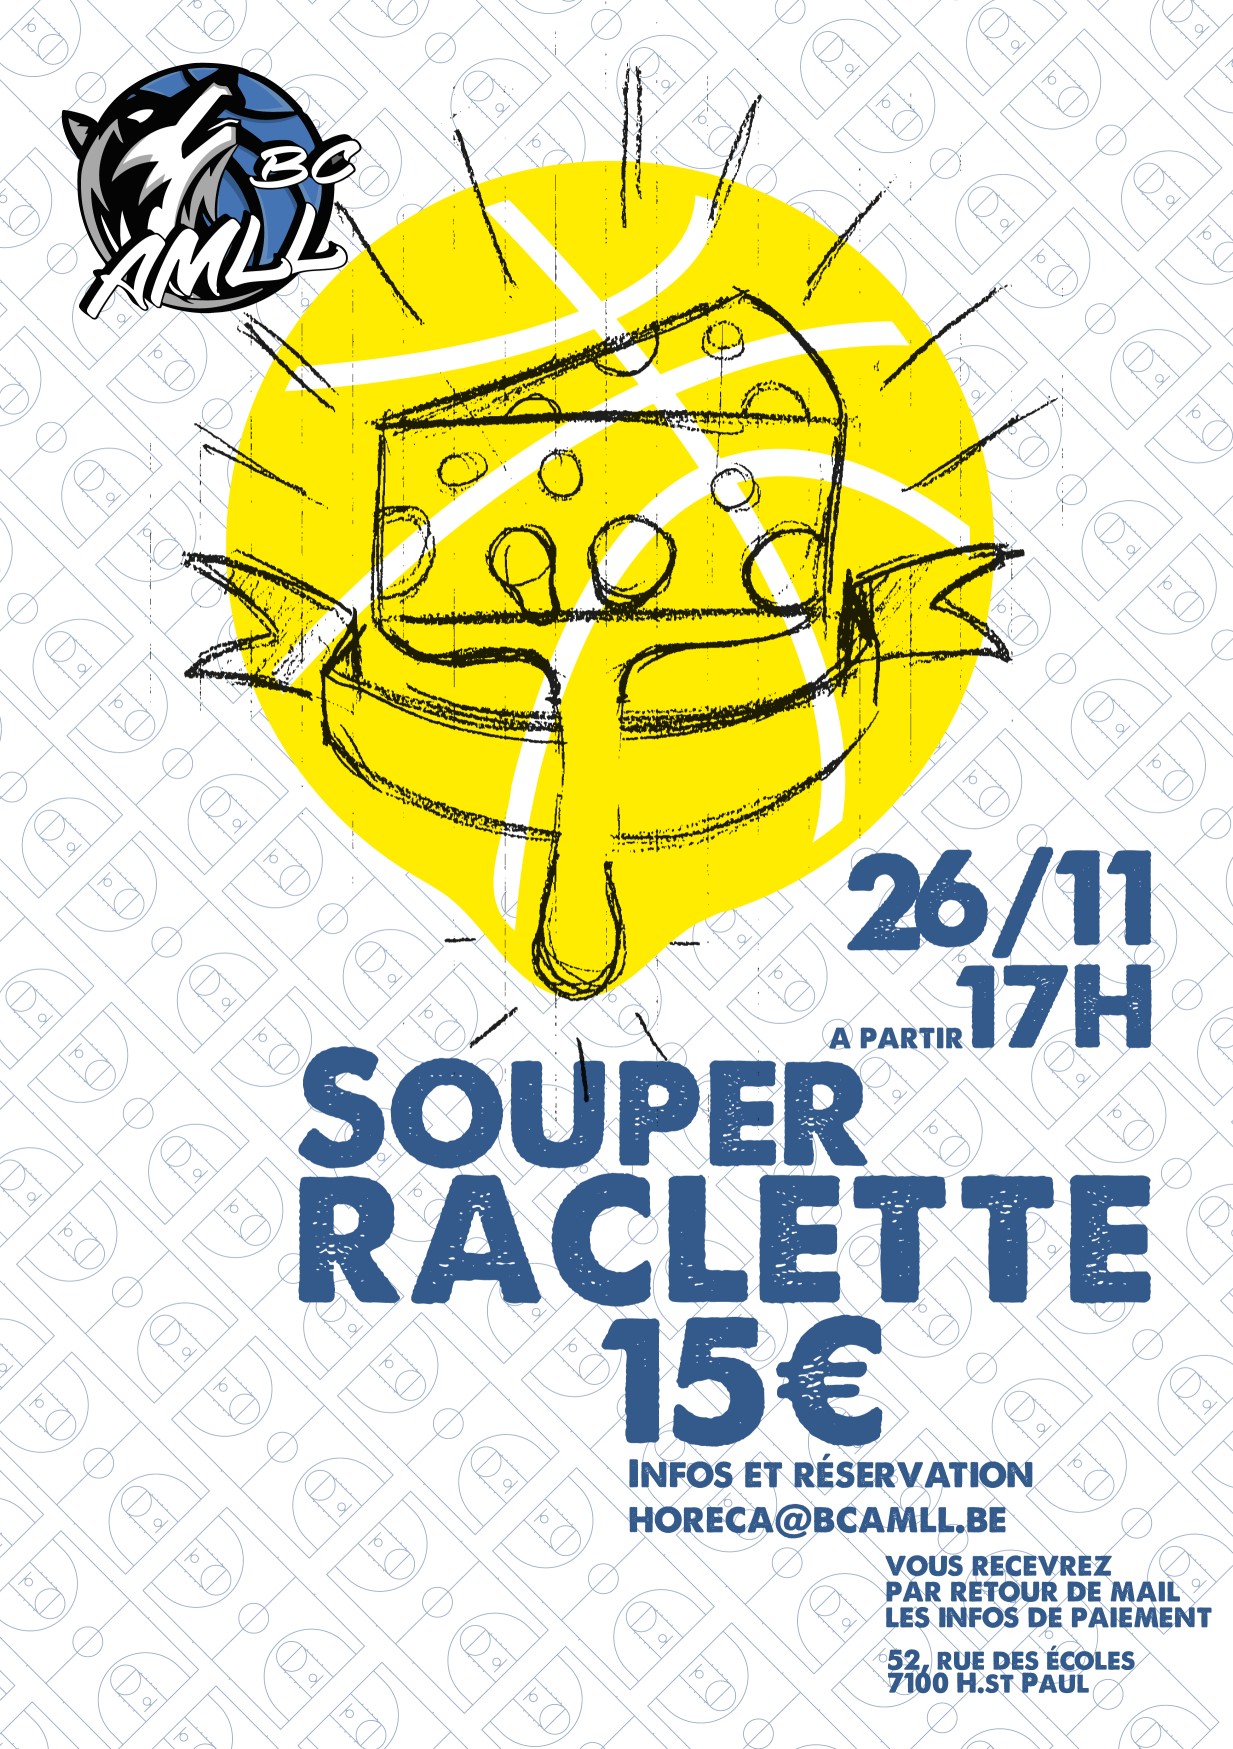 Souper raclette 26-11-22 bis